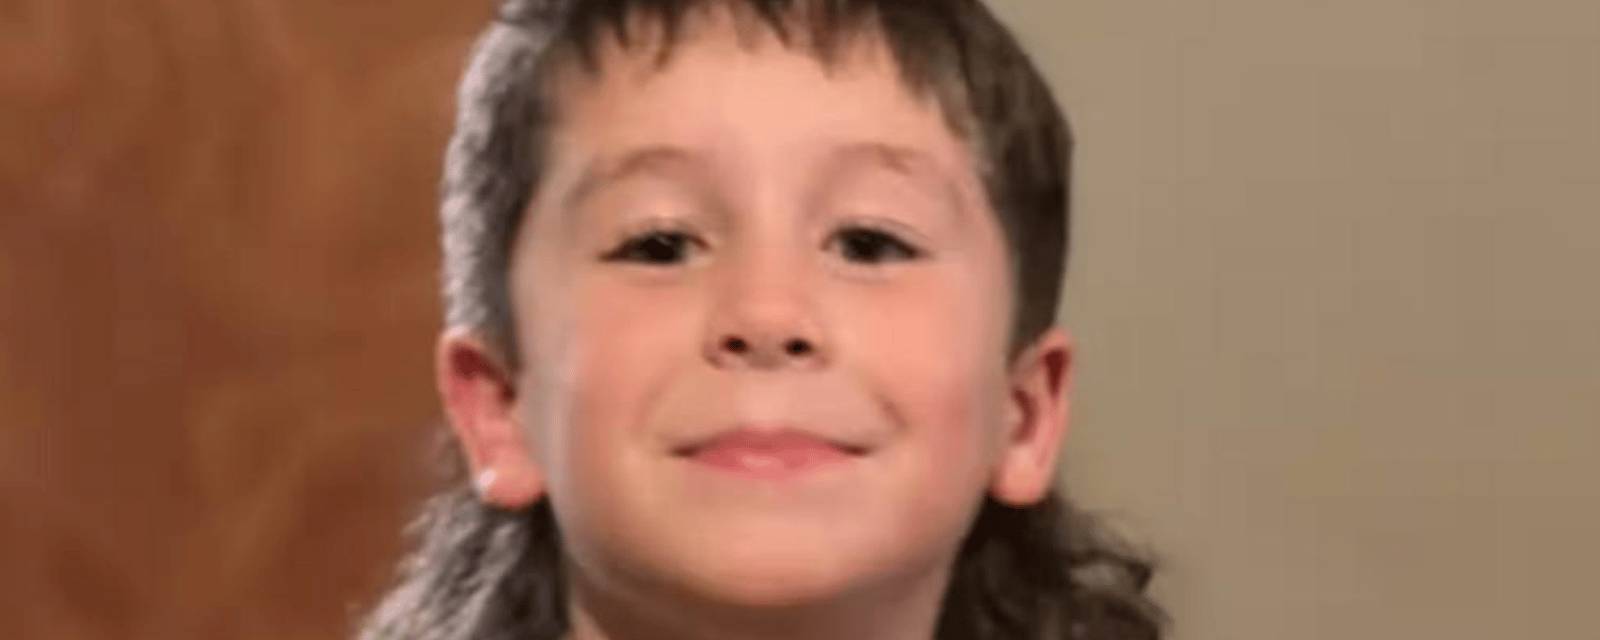 Un garçon de 9 ans sauve la vie de ses parents à la suite d'une tornade.